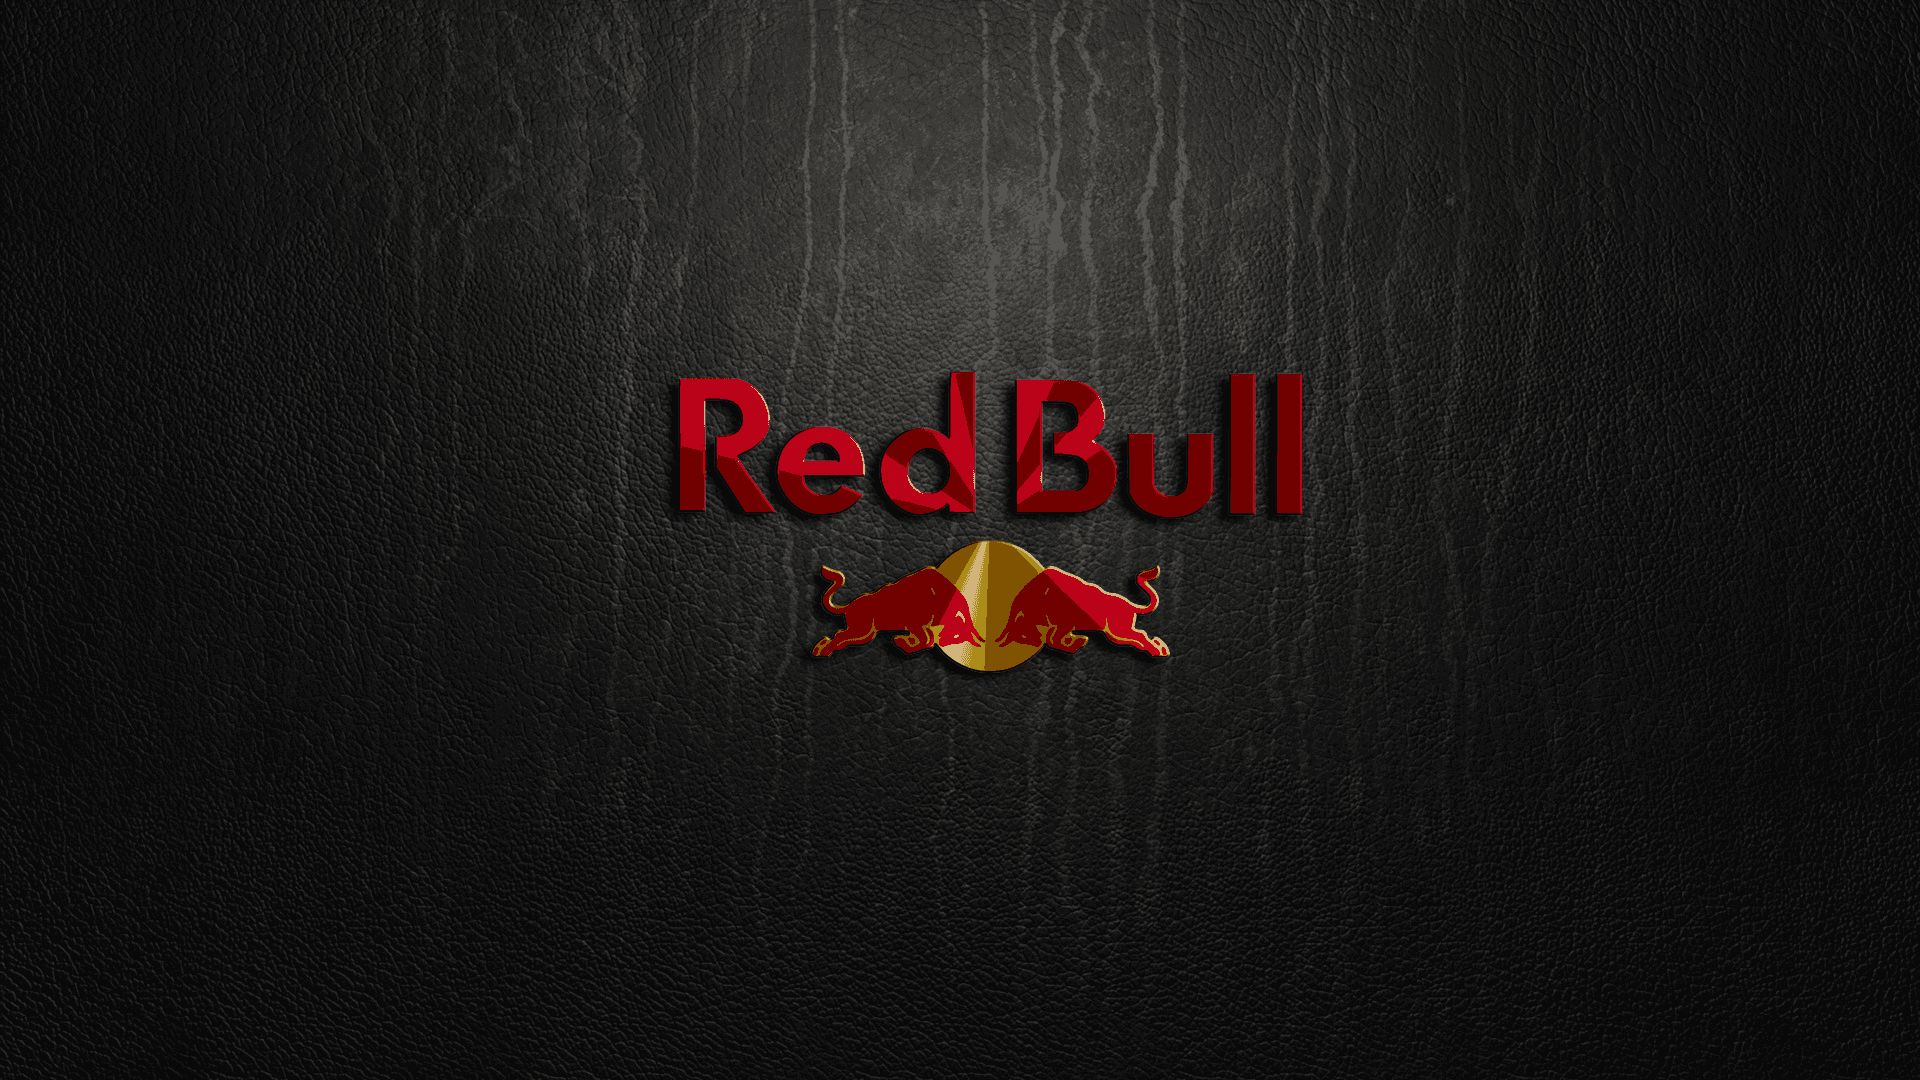 Belebensie Ihre Träume Mit Red Bull.